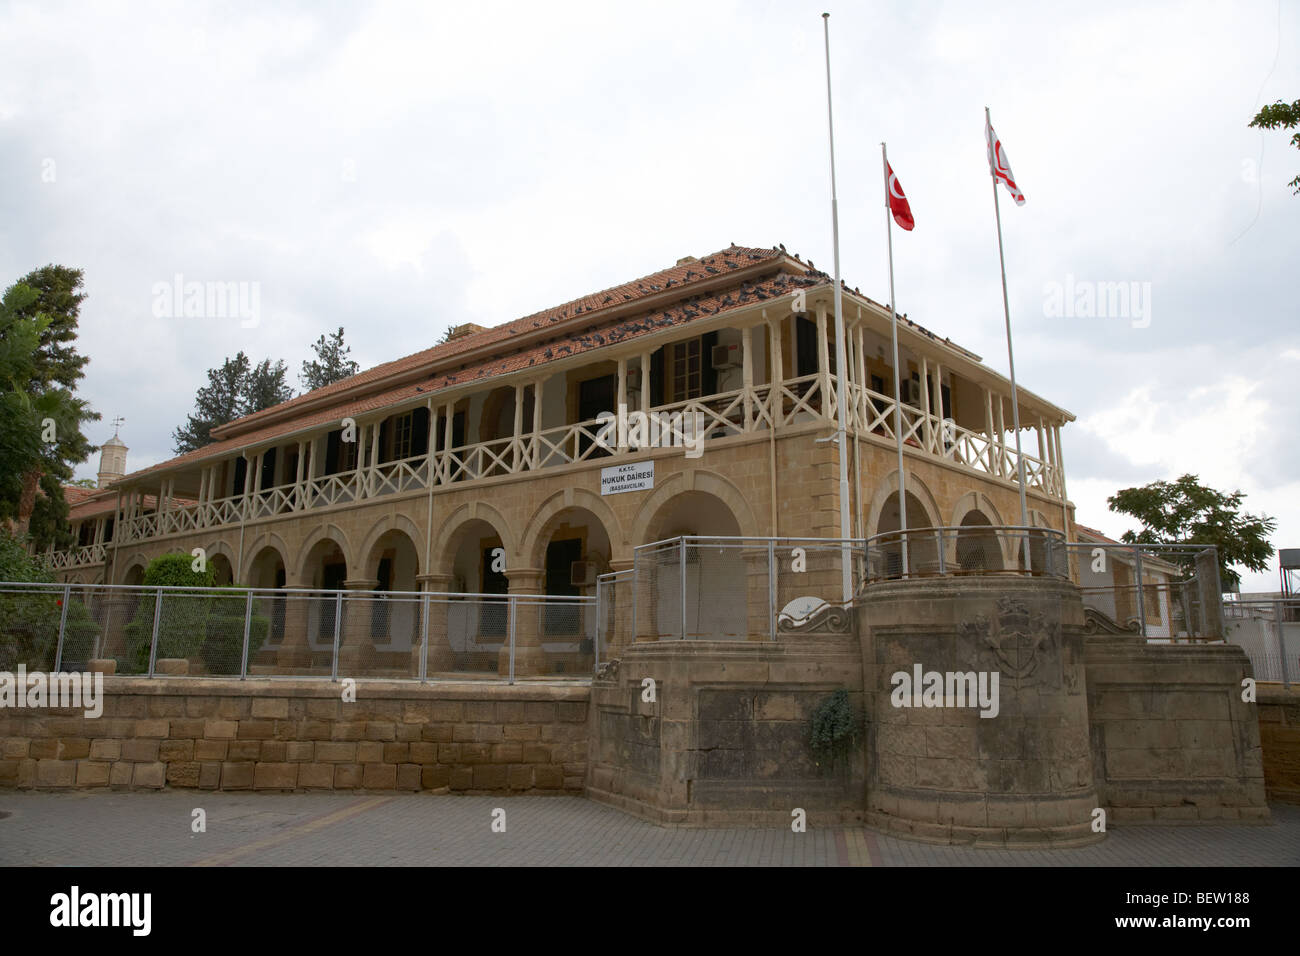 Le palais de justice bâtiment dans sarayonu square RTCN Nicosie République turque de Chypre du nord Banque D'Images